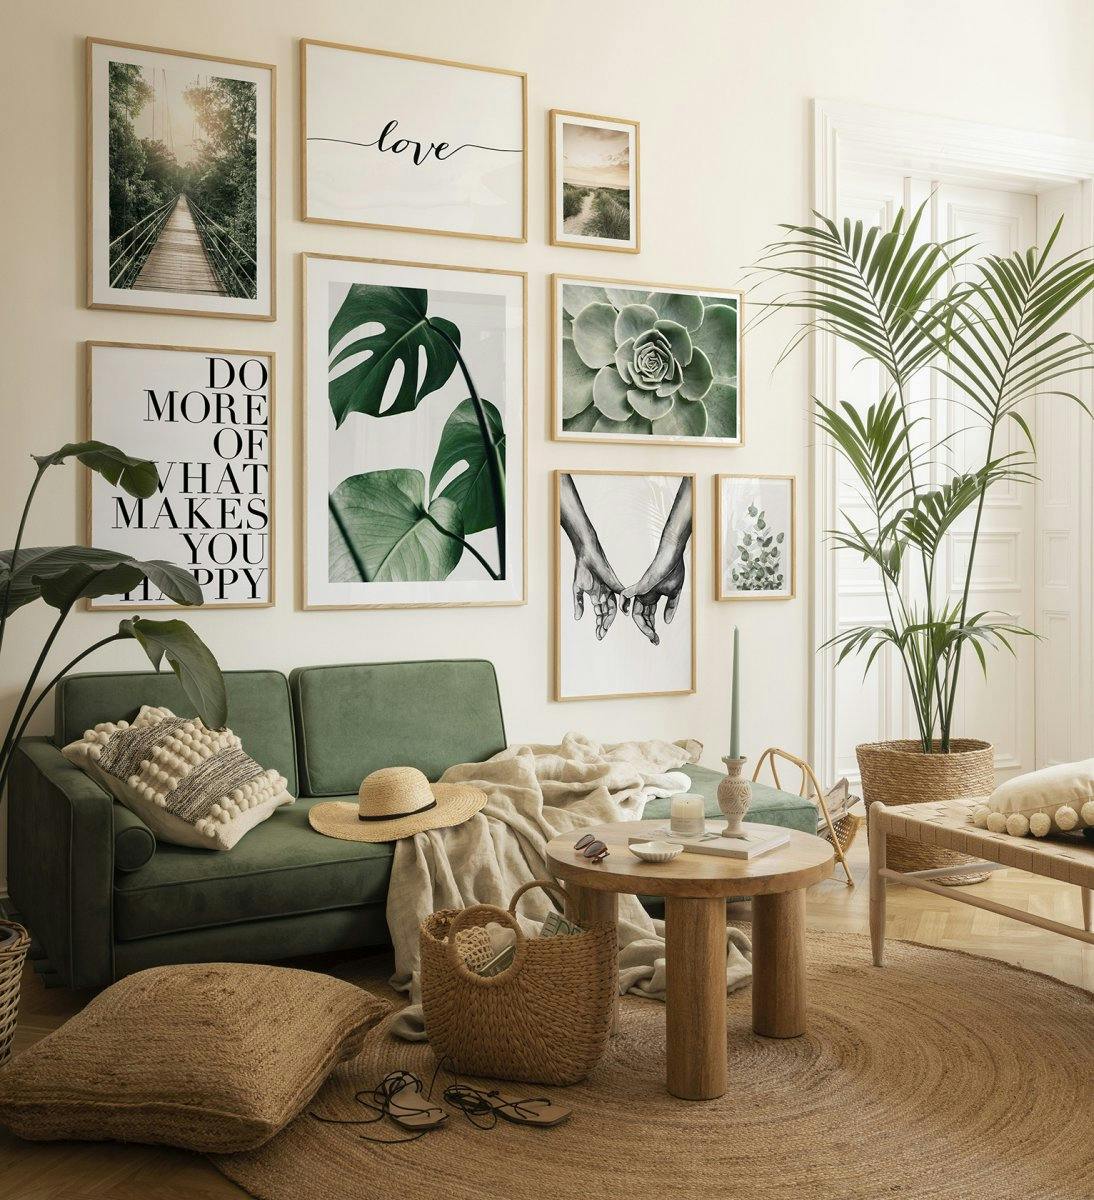 Décoration murale tropicale verte avec des affiches de nature dans des cadres en chêne pour le salon